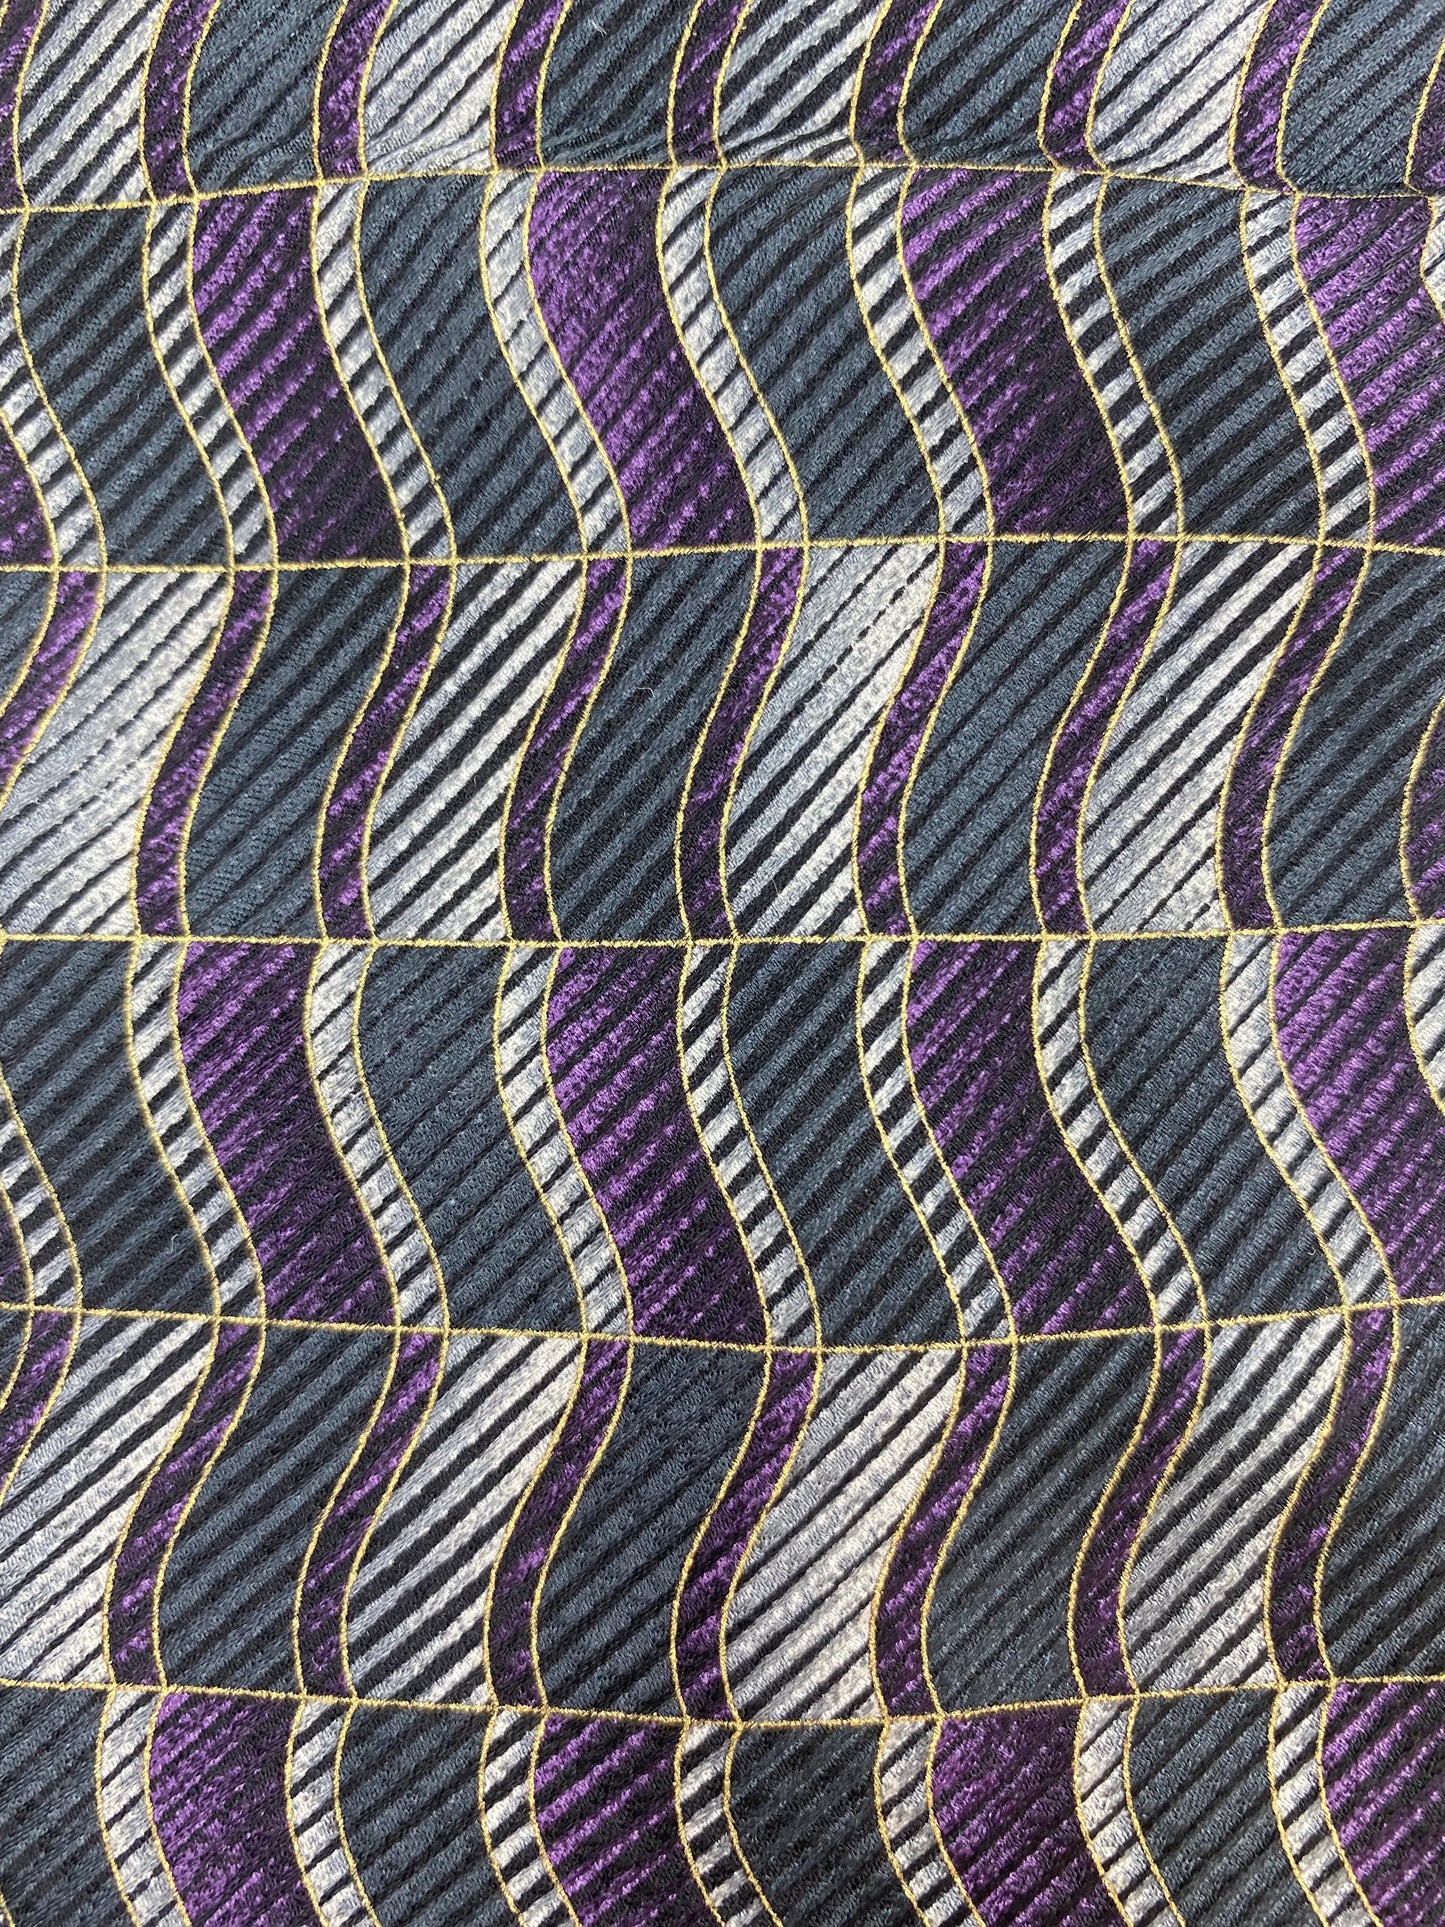 90s Deadstock Silk Necktie, Men's Vintage Purple/ Green Geometric Wave Pattern Tie, NOS